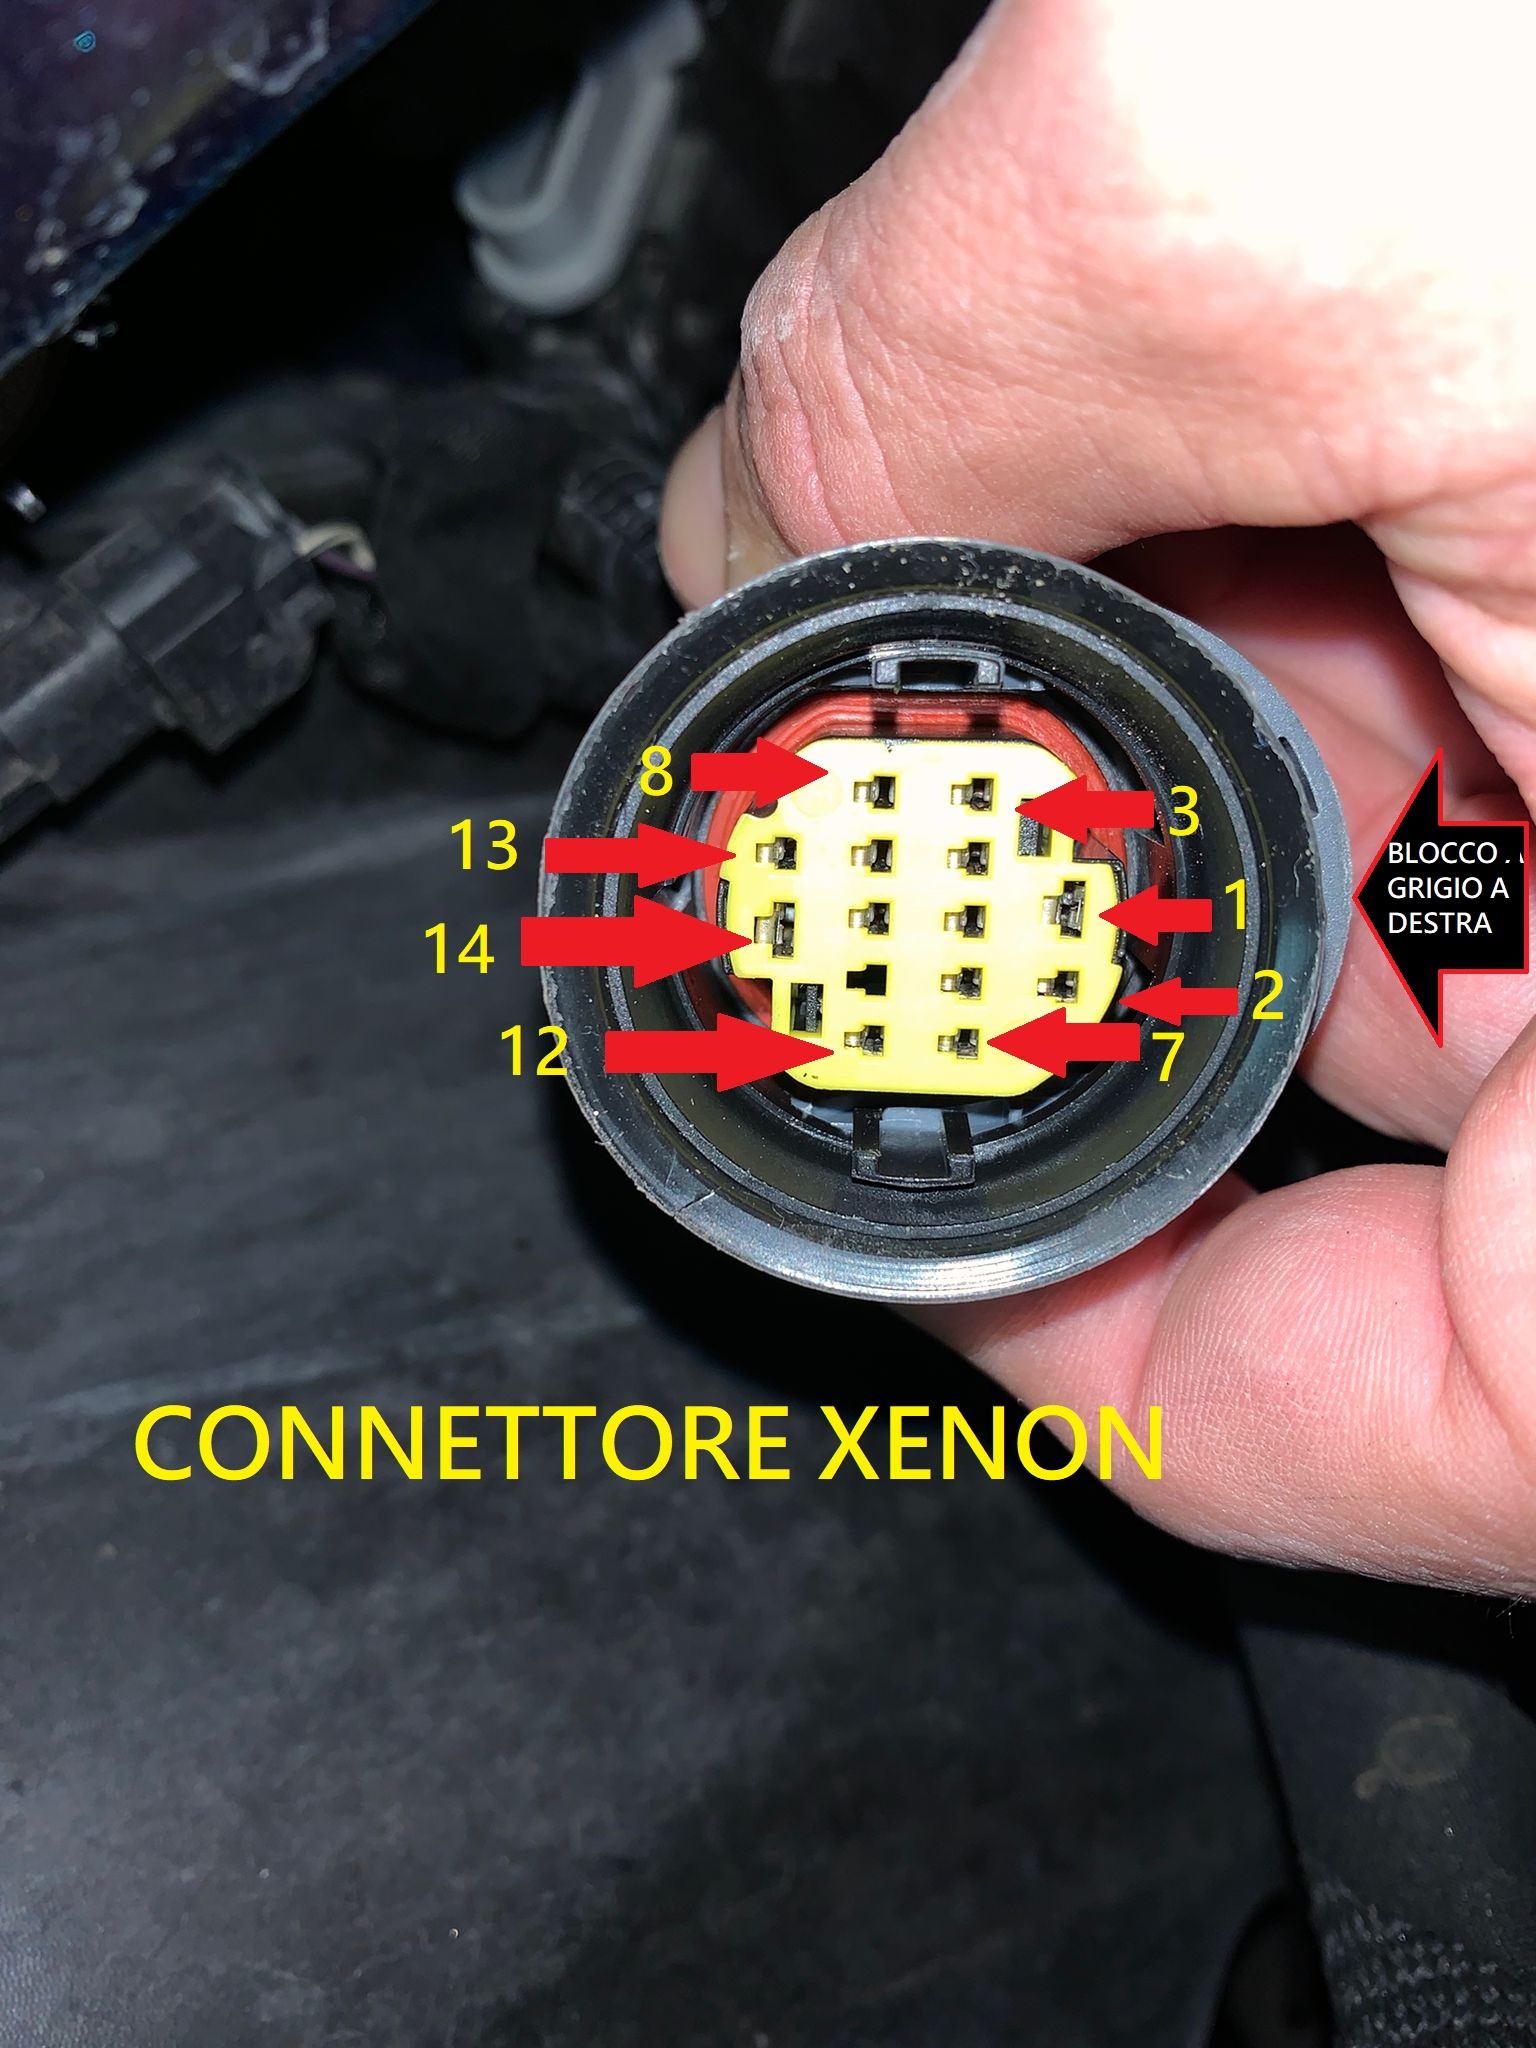 Connettore cablato xenon.jpg